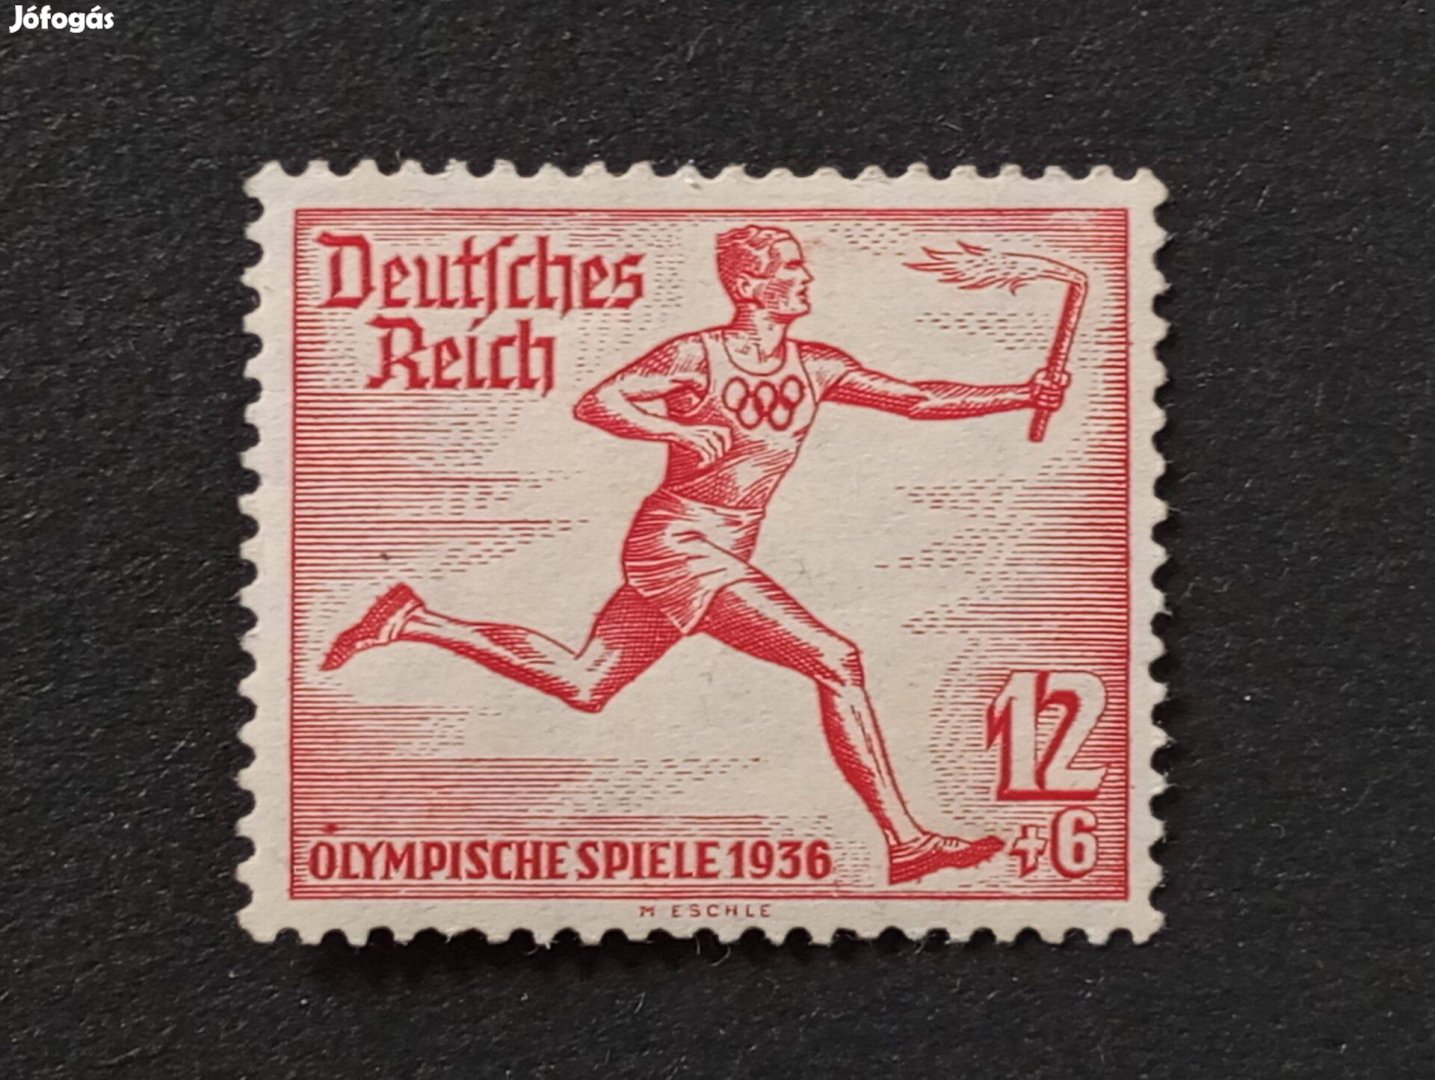 Deutsches Reich 12+6 Pfg. bélyeg 1936-os olimpiai játékok - Berlin